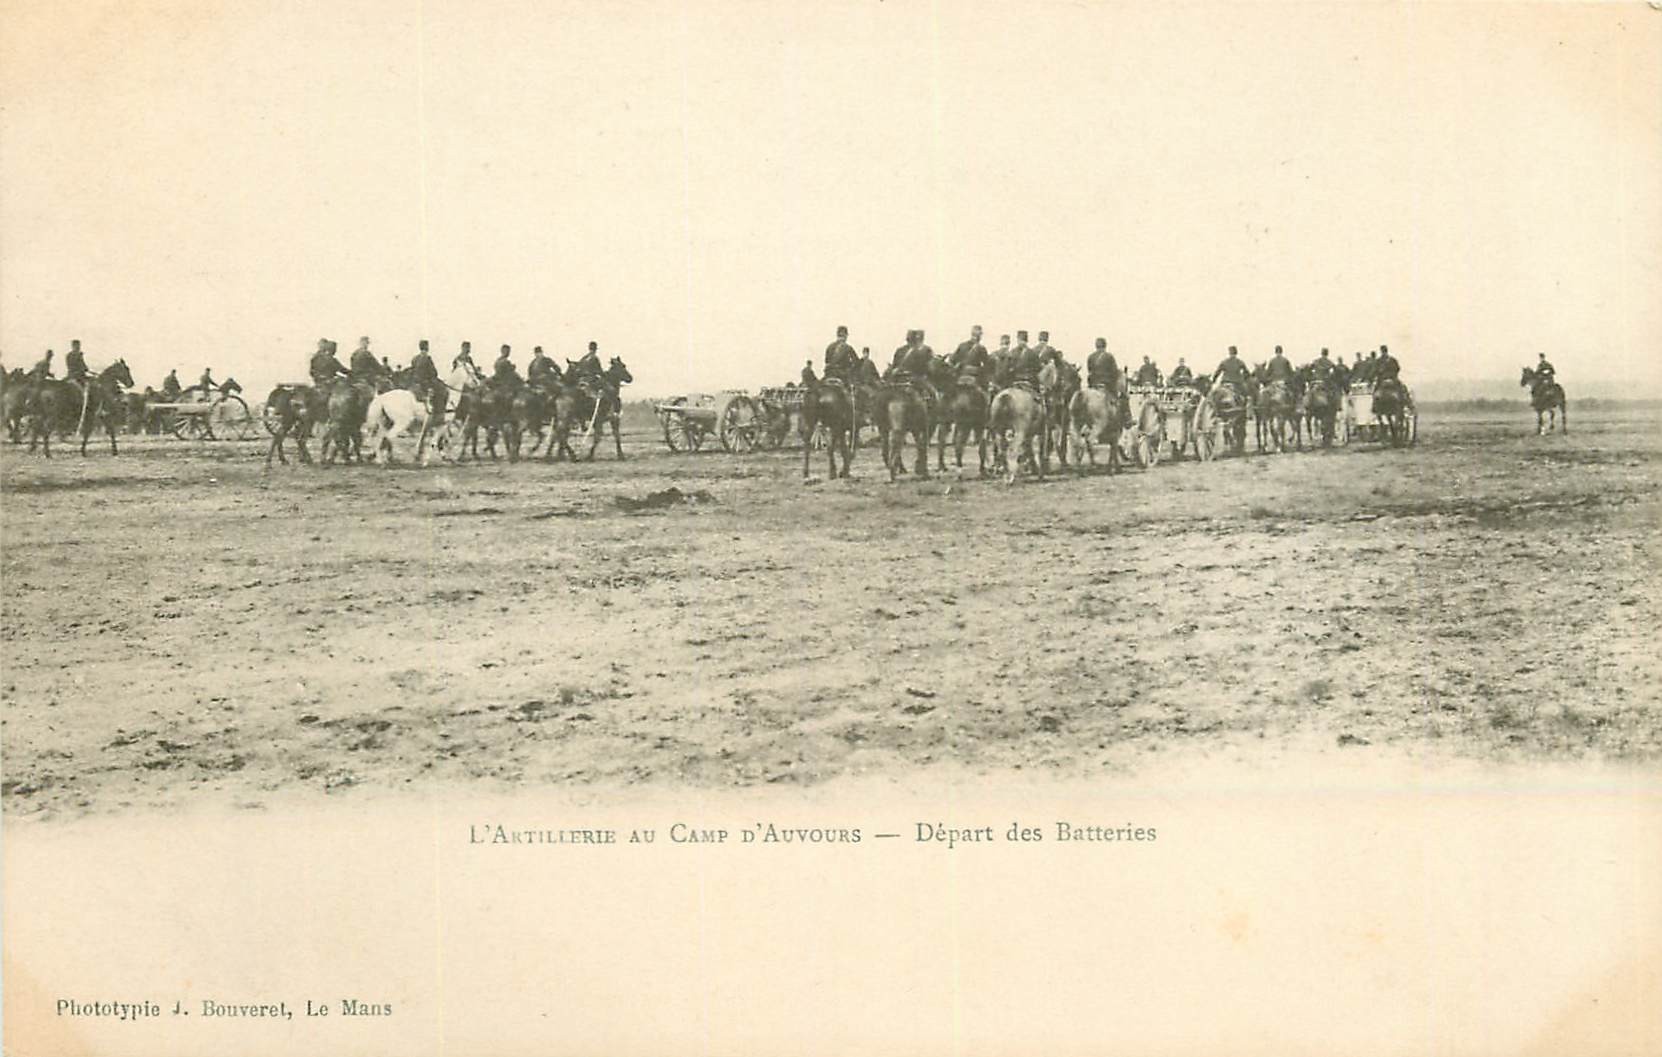 WW MILITAIRES. Artillerie au Camp d'Auvours départ des Batteries vers 1900